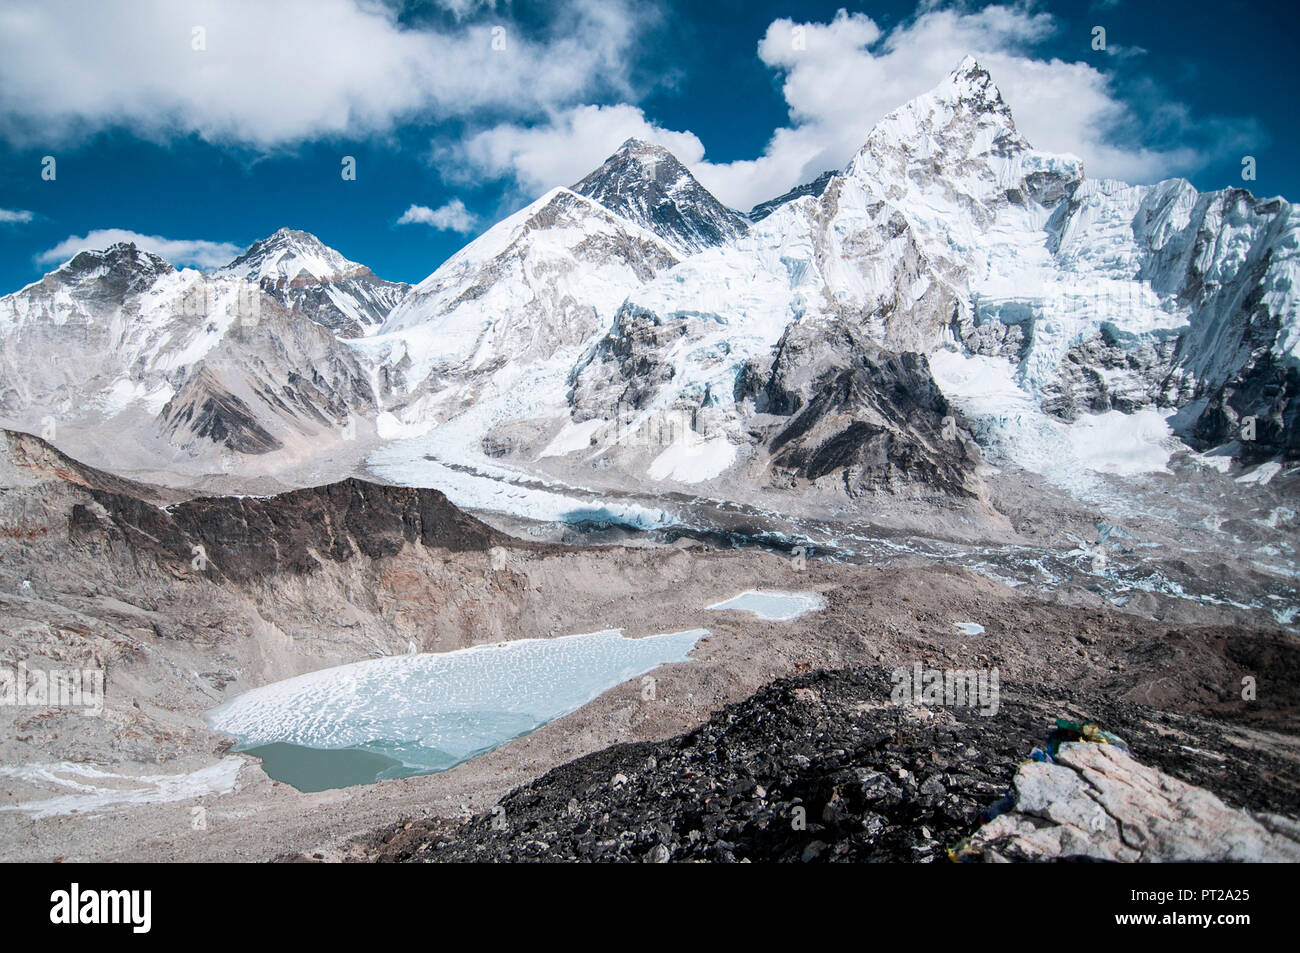 L'Asie, Népal, Himalaya, Khumbu, parc national de Sagarmatha, Camp de base de l'Everest, le Kala Patthar (5,643m) Banque D'Images